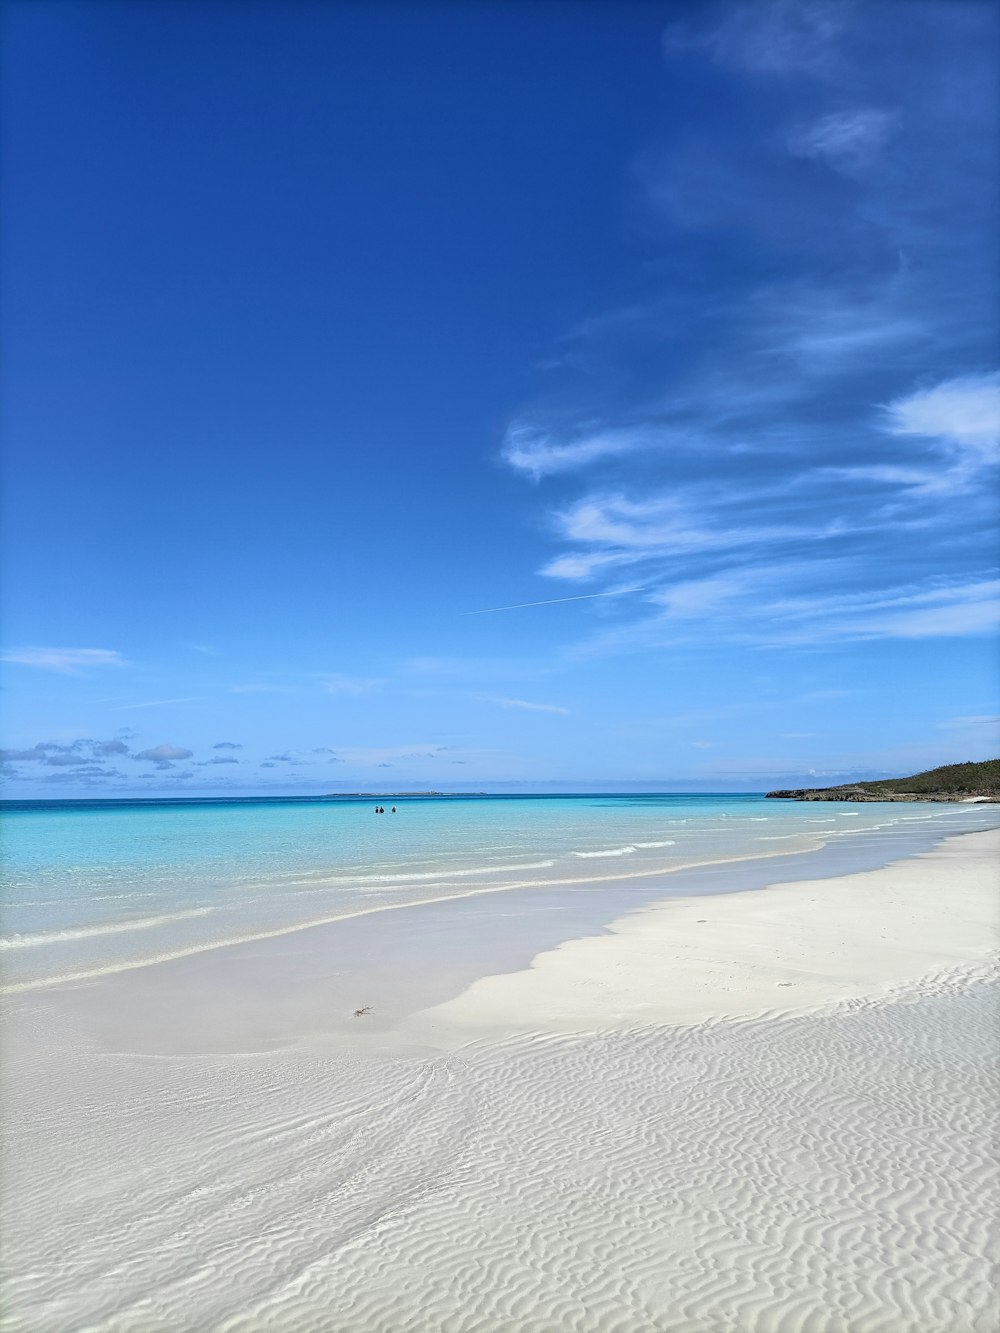 une plage de sable avec une eau bleue claire et un bateau au loin